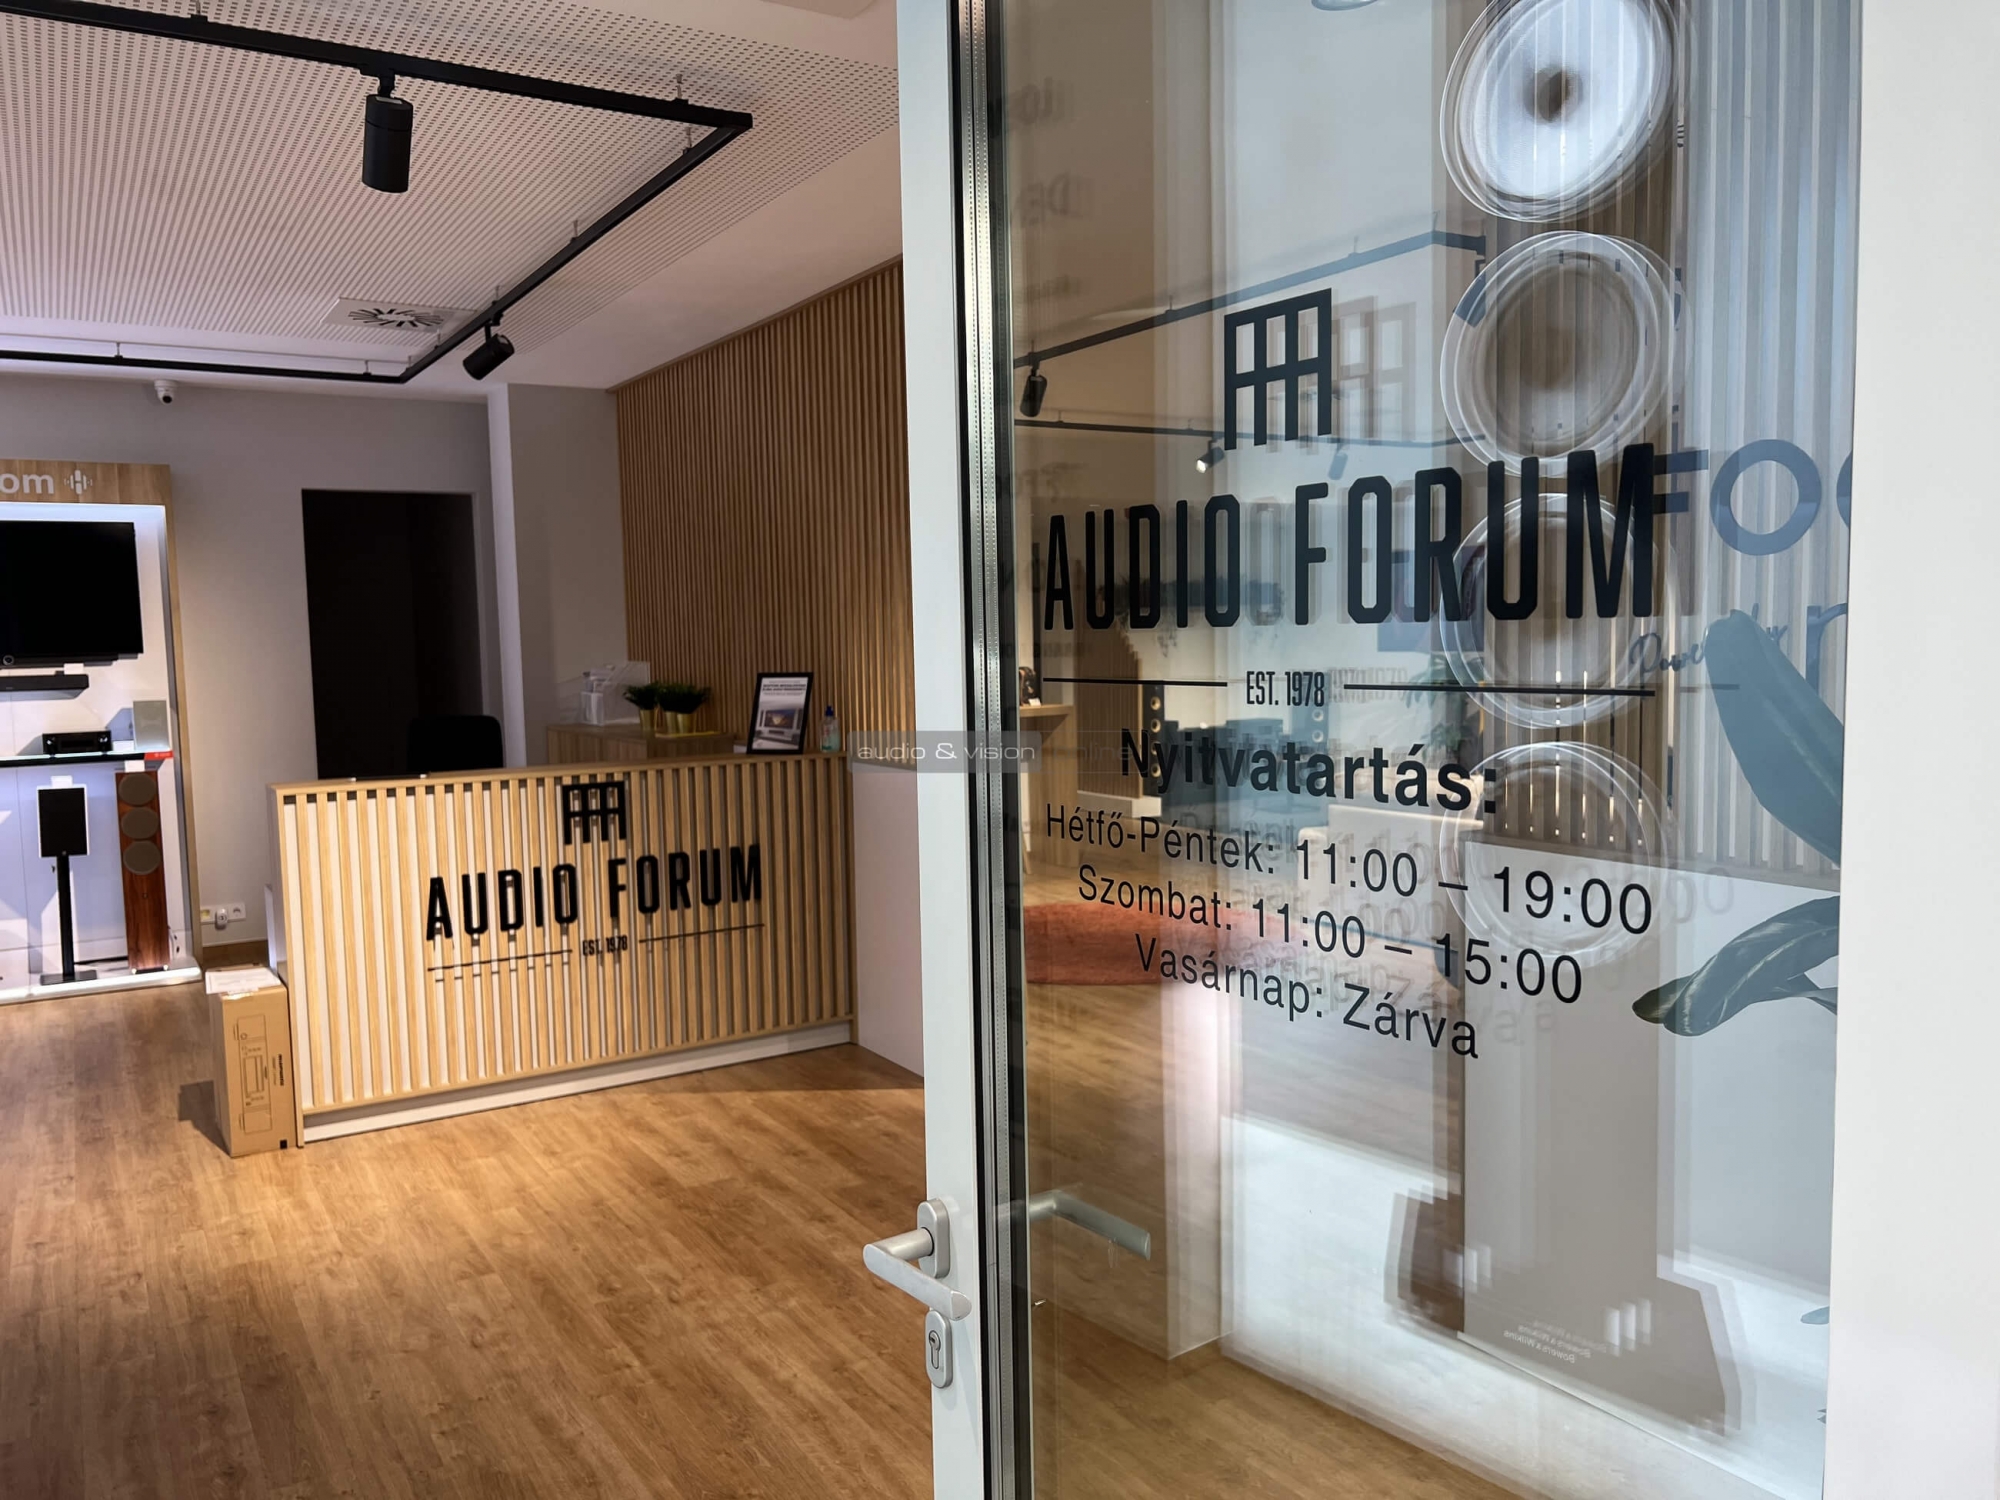 Audio Forum Budapest bejárat nyitvatartás